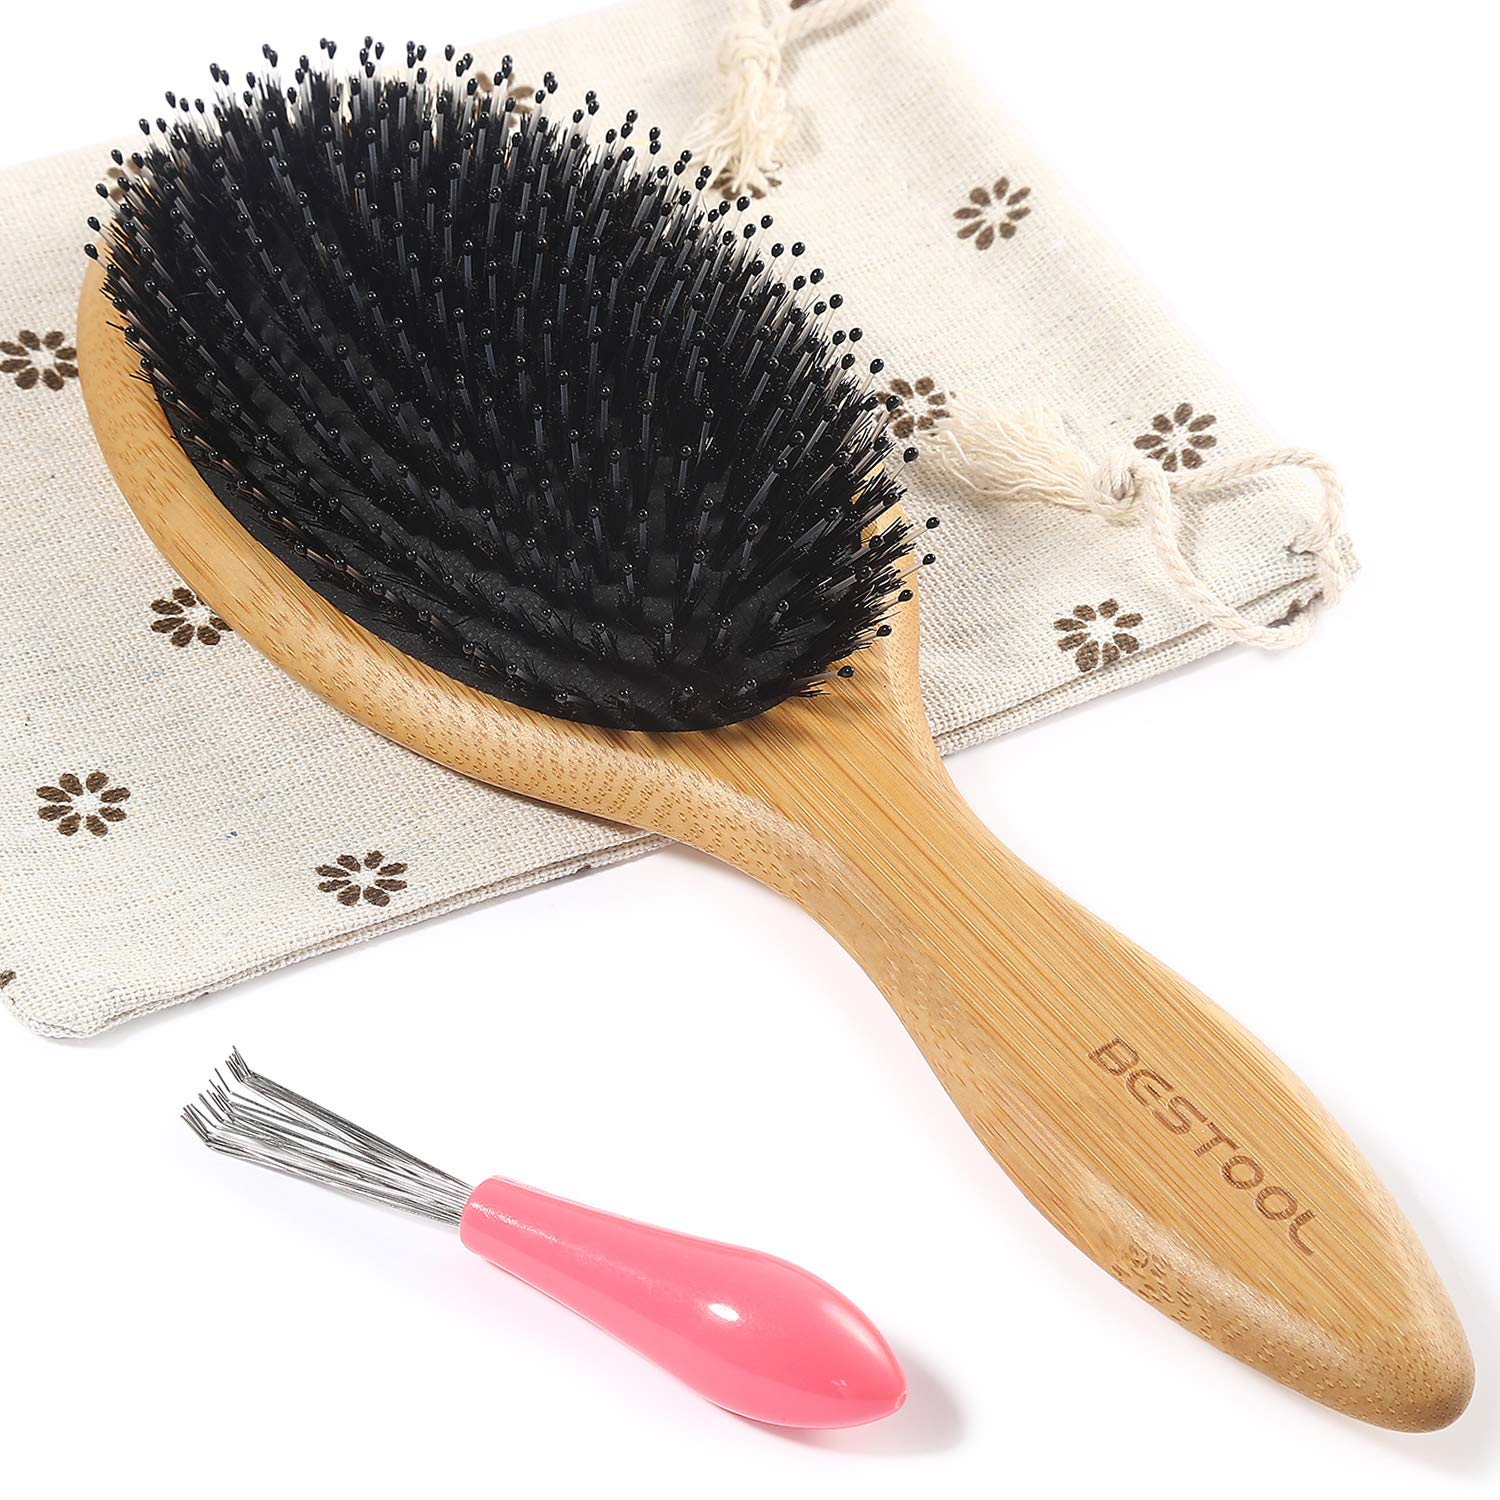 BESTOOL Hair Brushes for Women men Kid, Boar & Nylon [...]